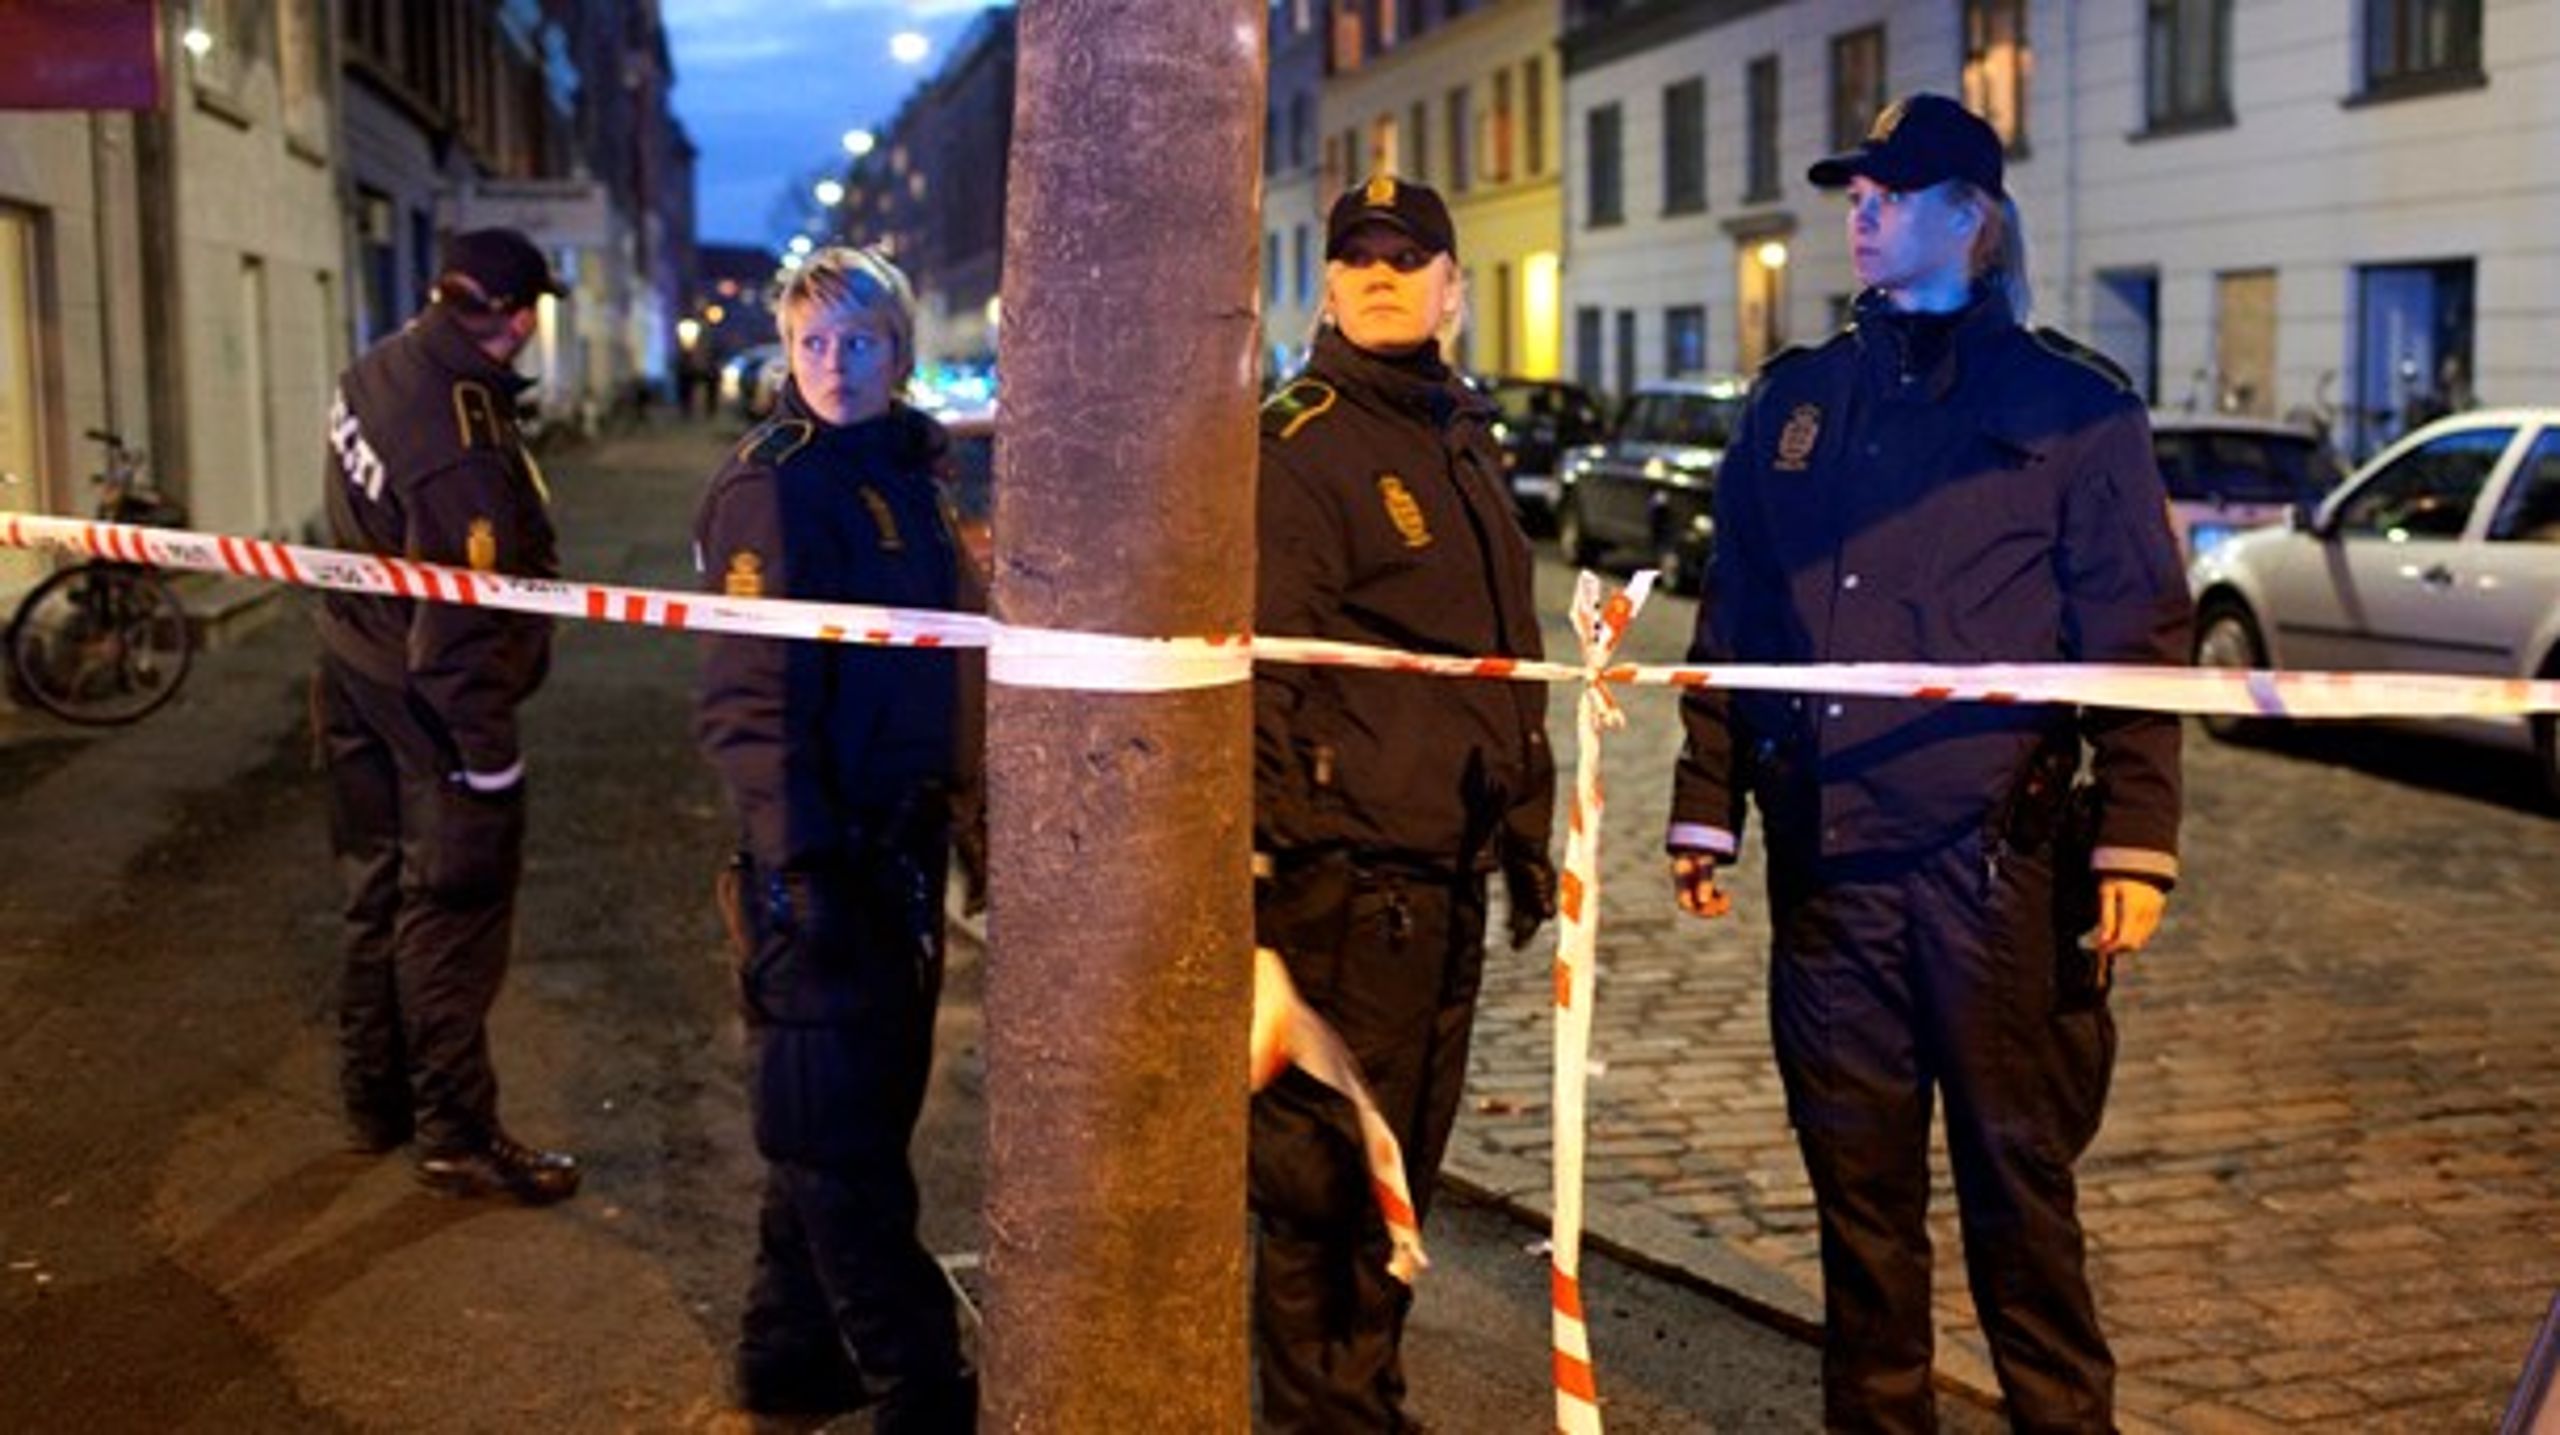 Politiets arbejde med psykisk syge er en voksende udfordring, skriver politiformand Claus Oxfeldt. Billedet er fra 2009, hvor betjente skød og dræbte en 32-årig psykisk syg mand på Nørrebro, efter han havde såret de to betjente med en sabel.